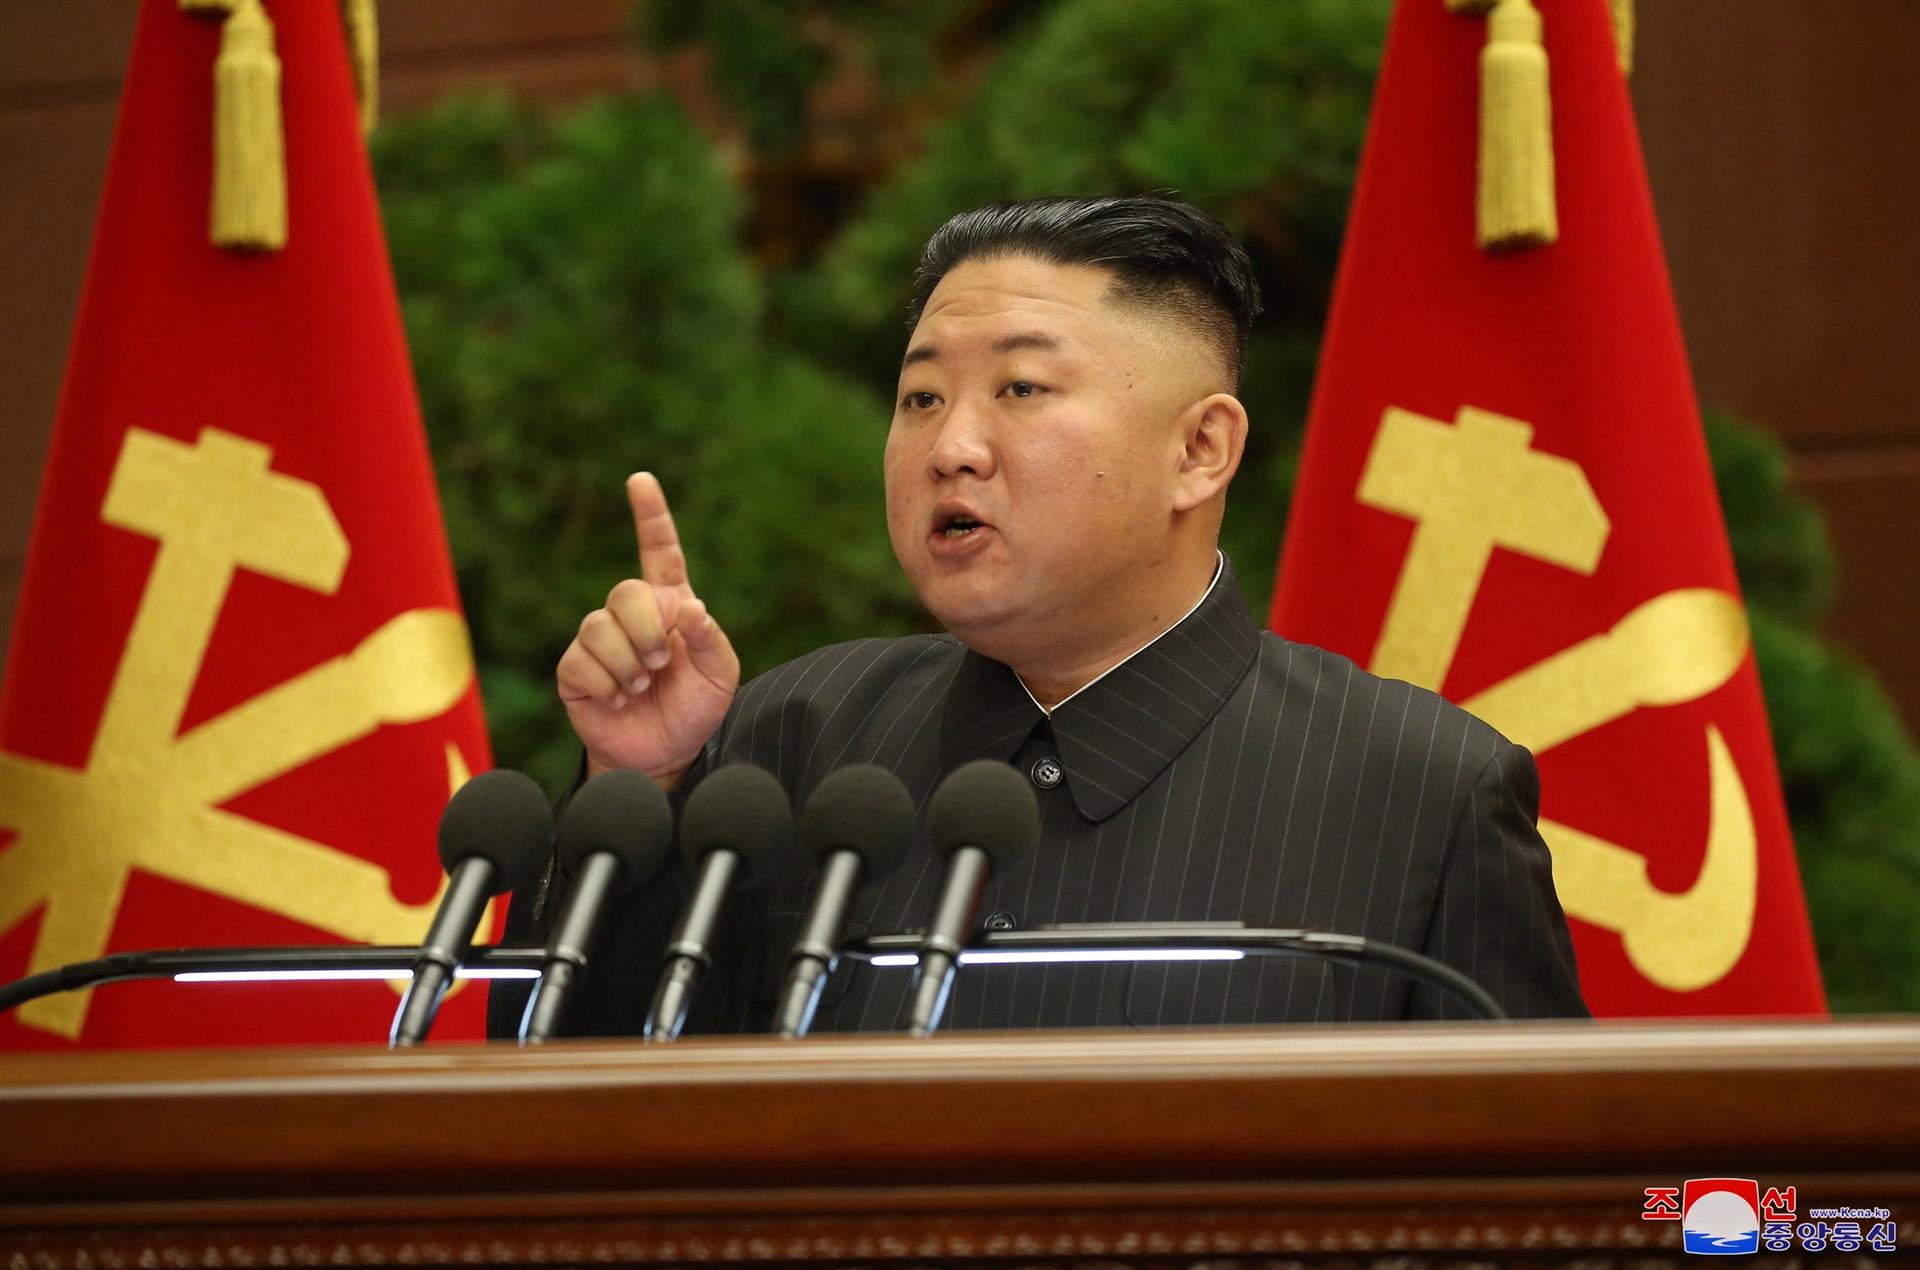 La crítica de Kim Jong Un a Corea del Sur tras ver “El juego del calamar”